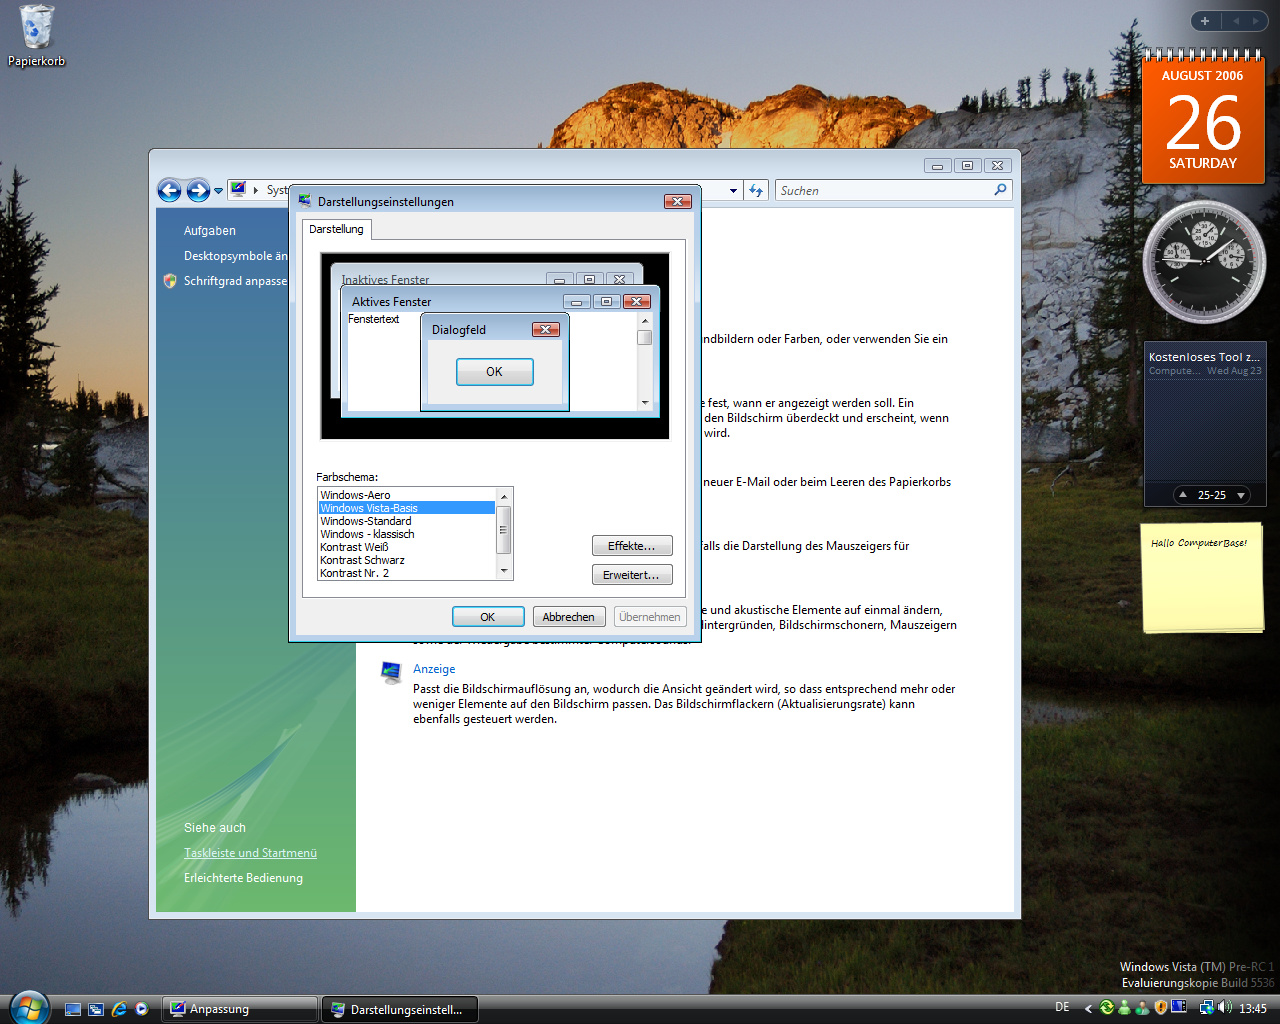 Windows Vista Build 5536 - Skins - Basis Skin für alte Systeme ohne DirectX 9